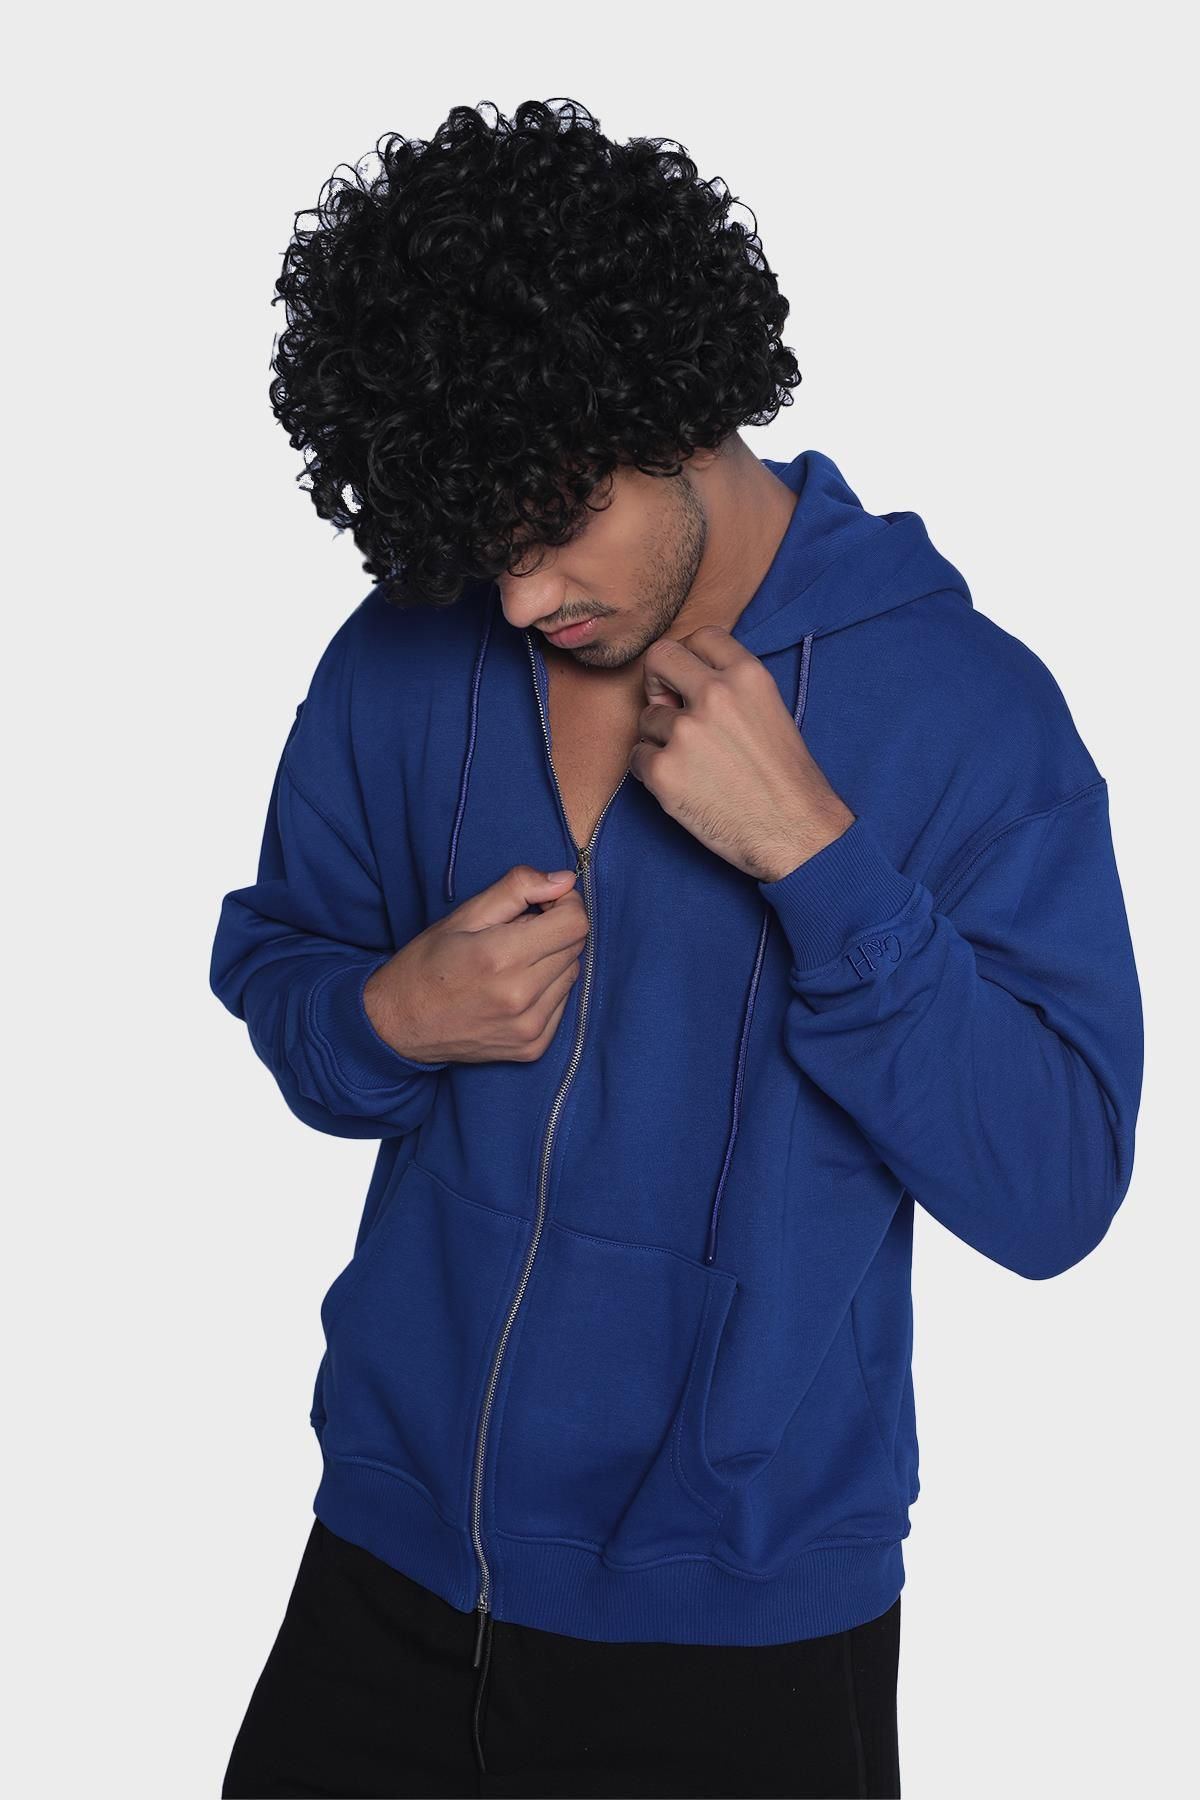 Erkek kapüşonlu, uzun kollu ve fermuarlı sweatshirt - Sax mavi